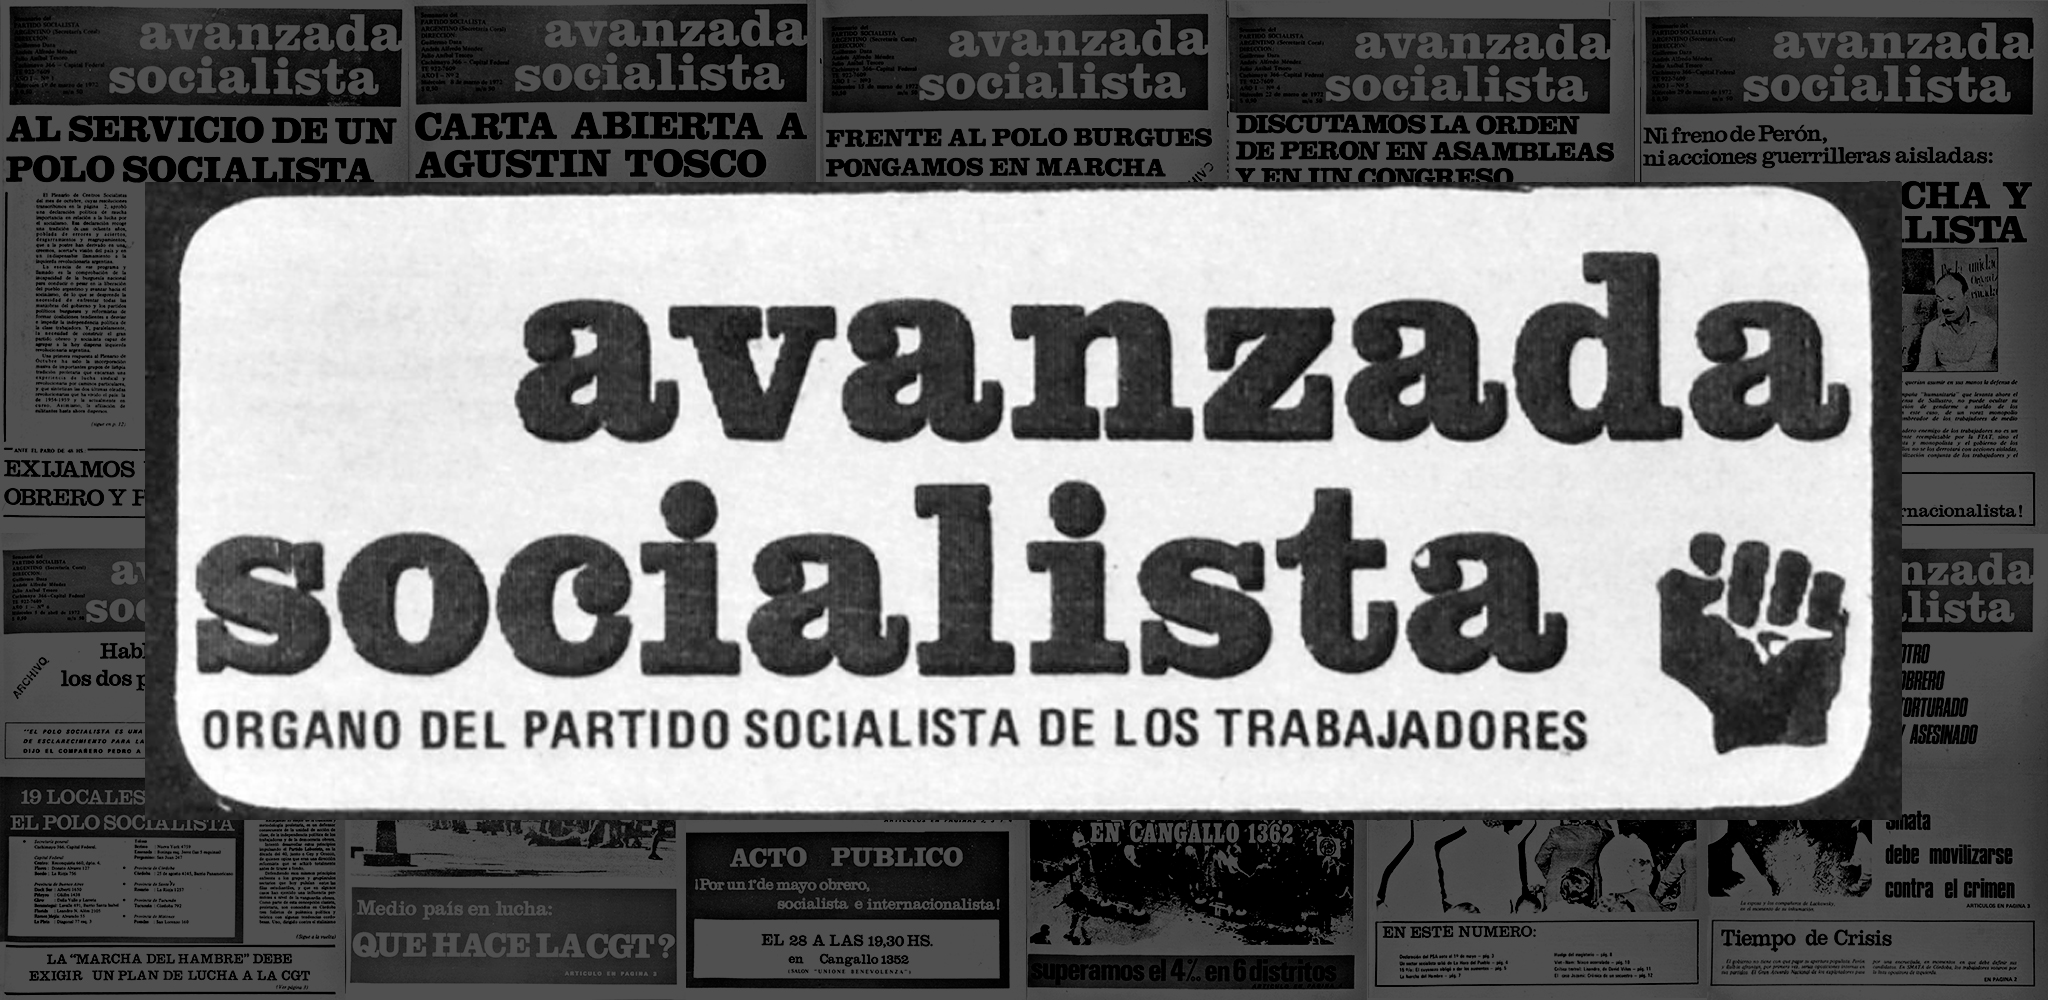 Avanzada Socialista (1973)